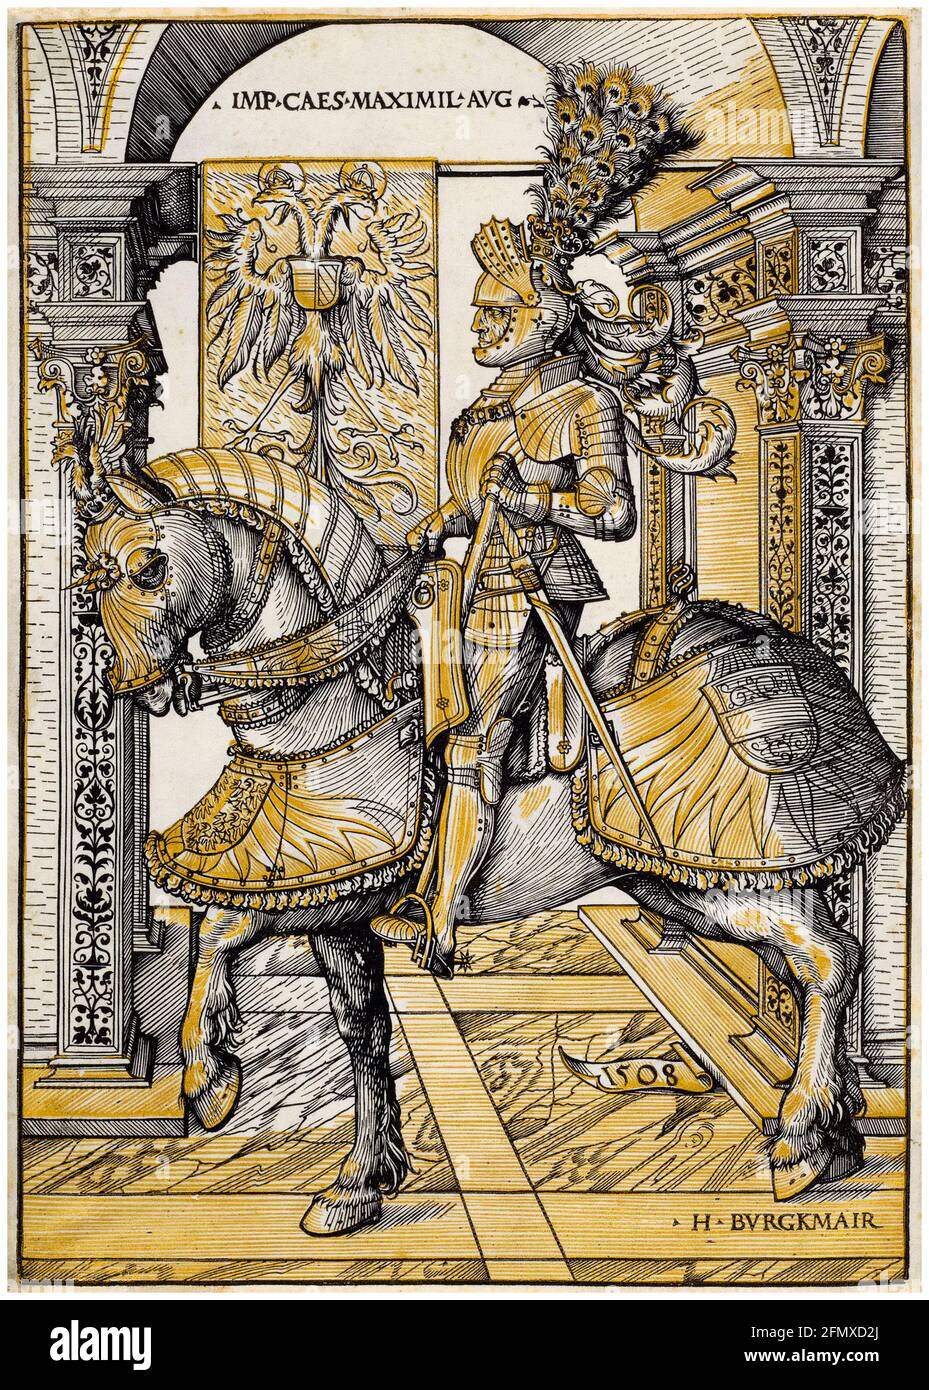 Massimiliano i (1459-1519), Sacro Romano Imperatore 1508-1519, Ritratto equestre di Hans Burgkmair il Vecchio, 1508 Foto Stock